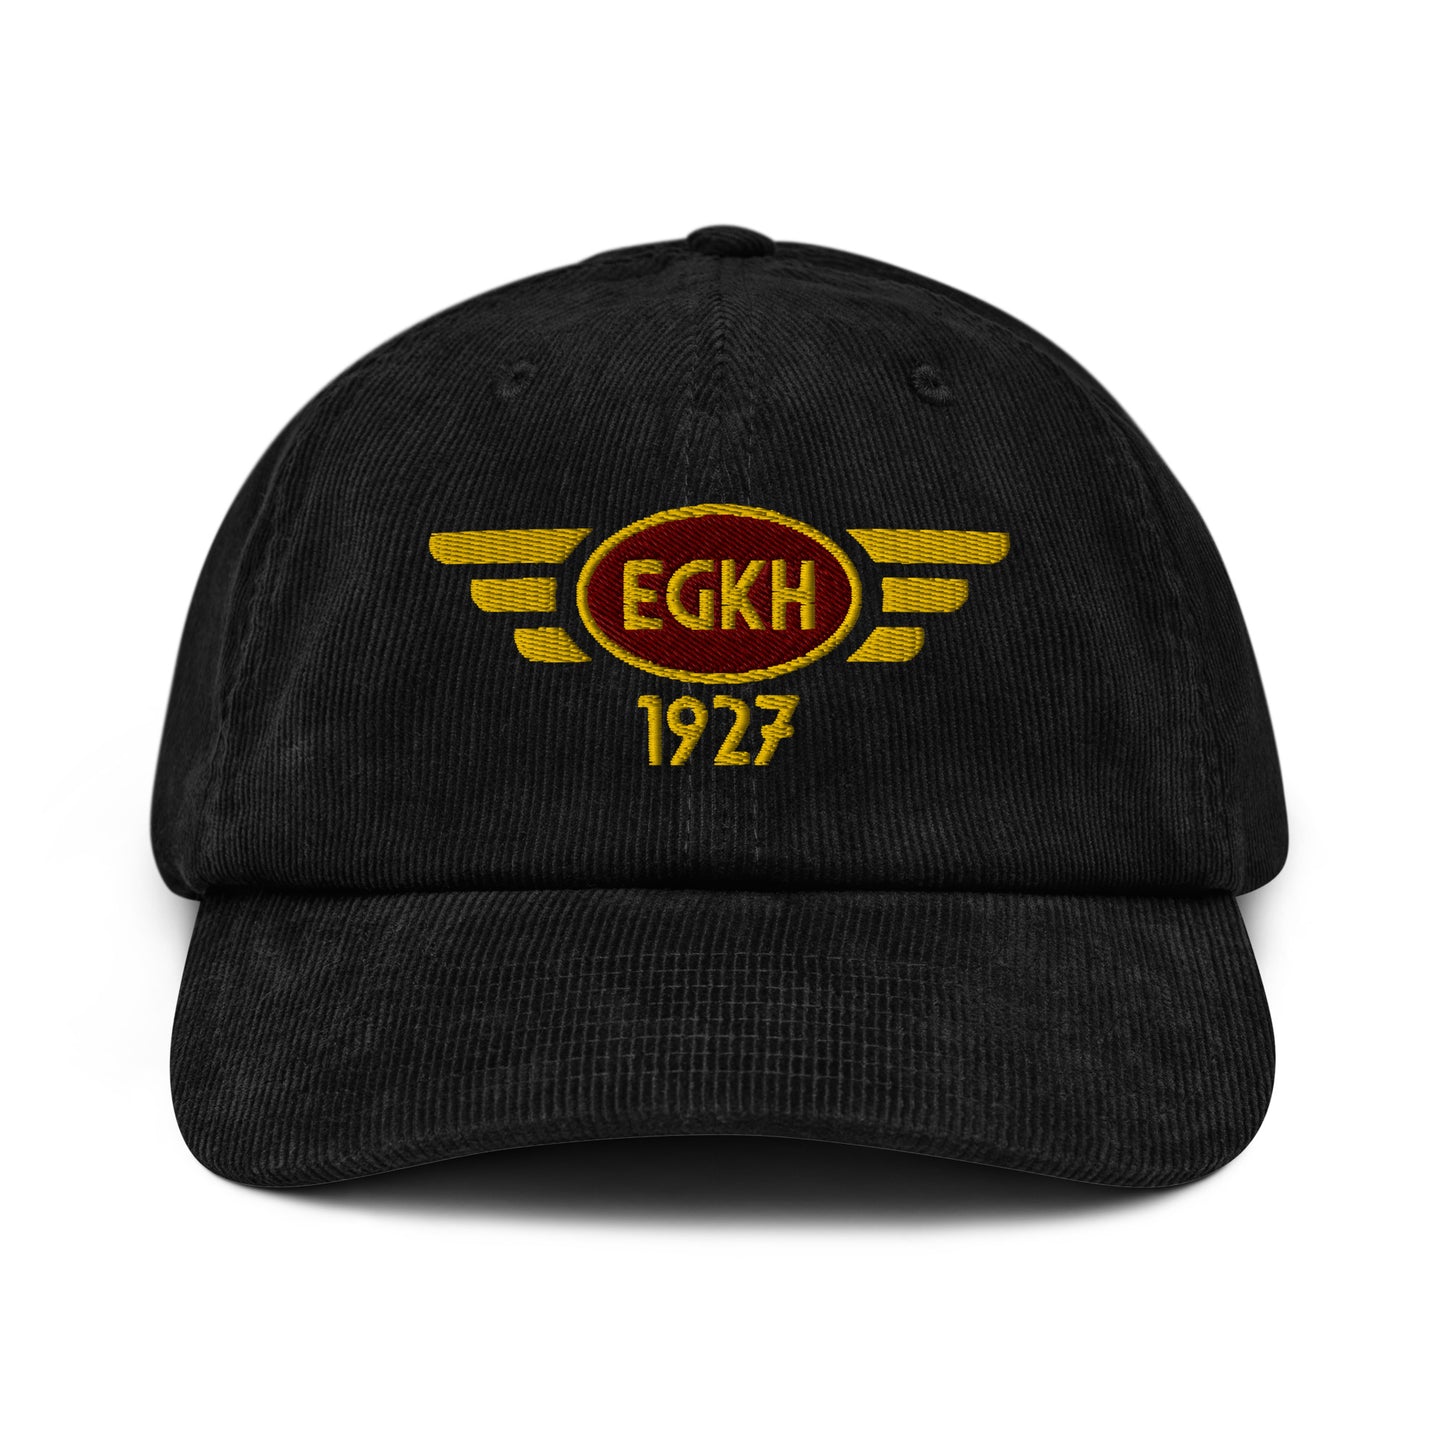 Headcorn Aerodrome corduroy cap with embroidered ICAO code.